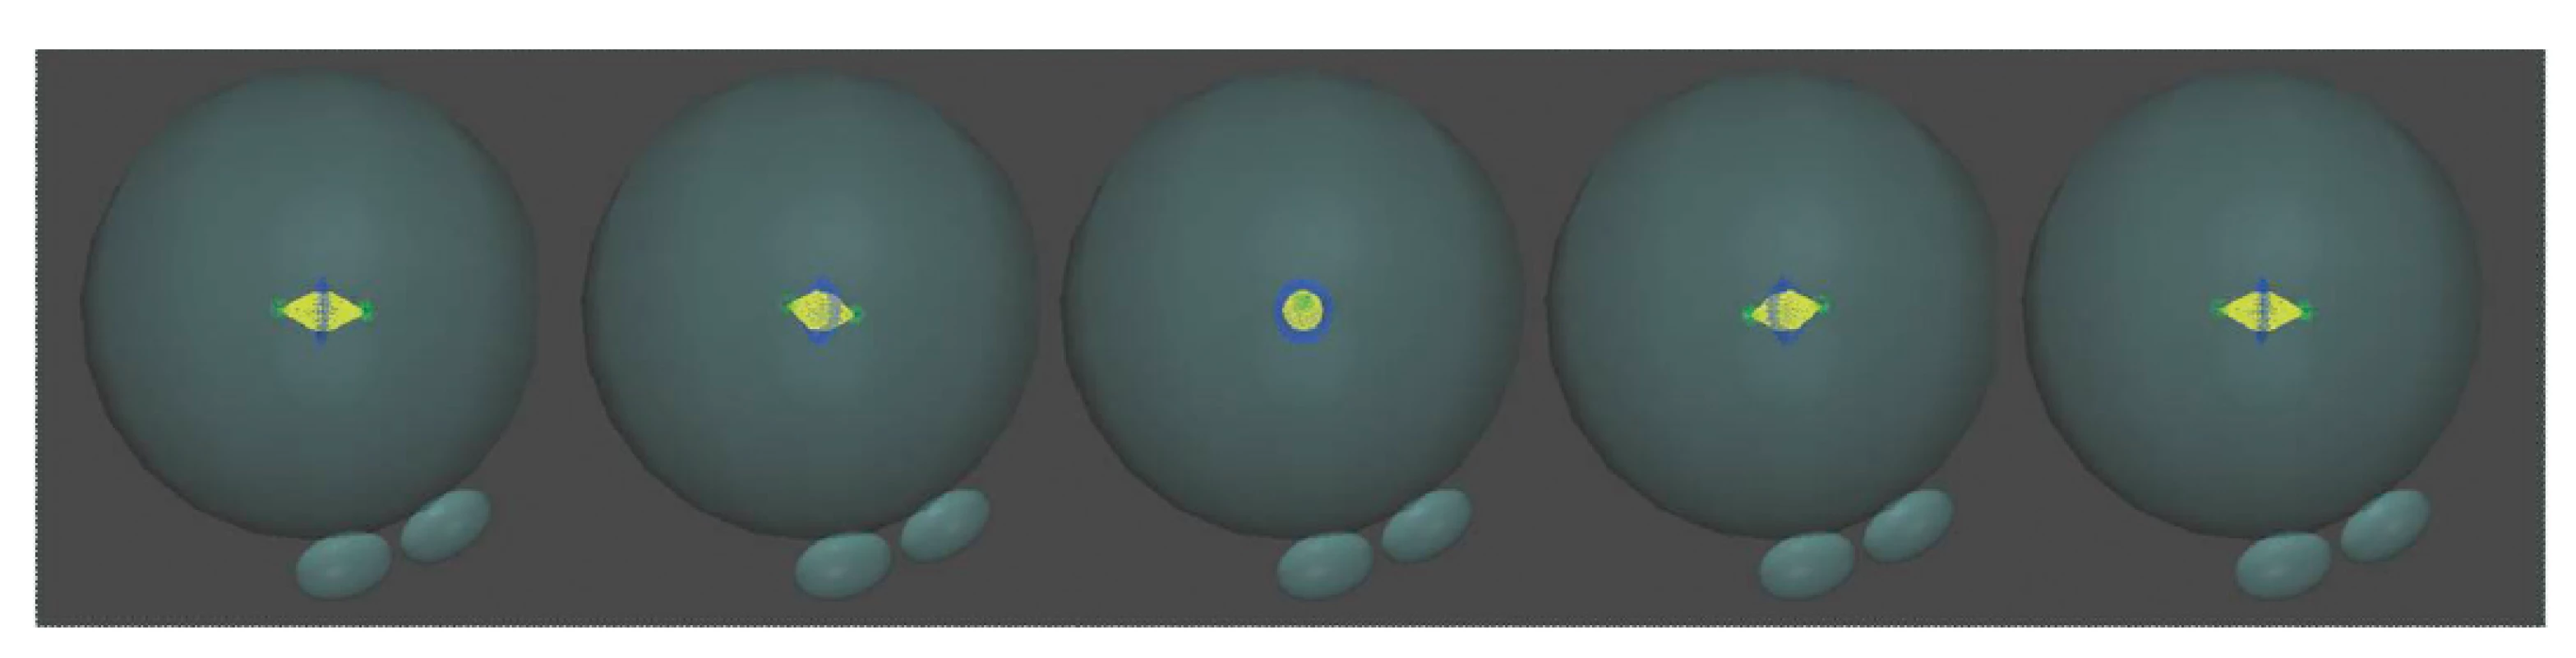 Líniu delenia v 1. mitóze ovplyvňuje poloha prvojadier pred nástupom syngamie a možná orientácia deliaceho vretienka v priestore. Autor 3D modelov D. Hlinka